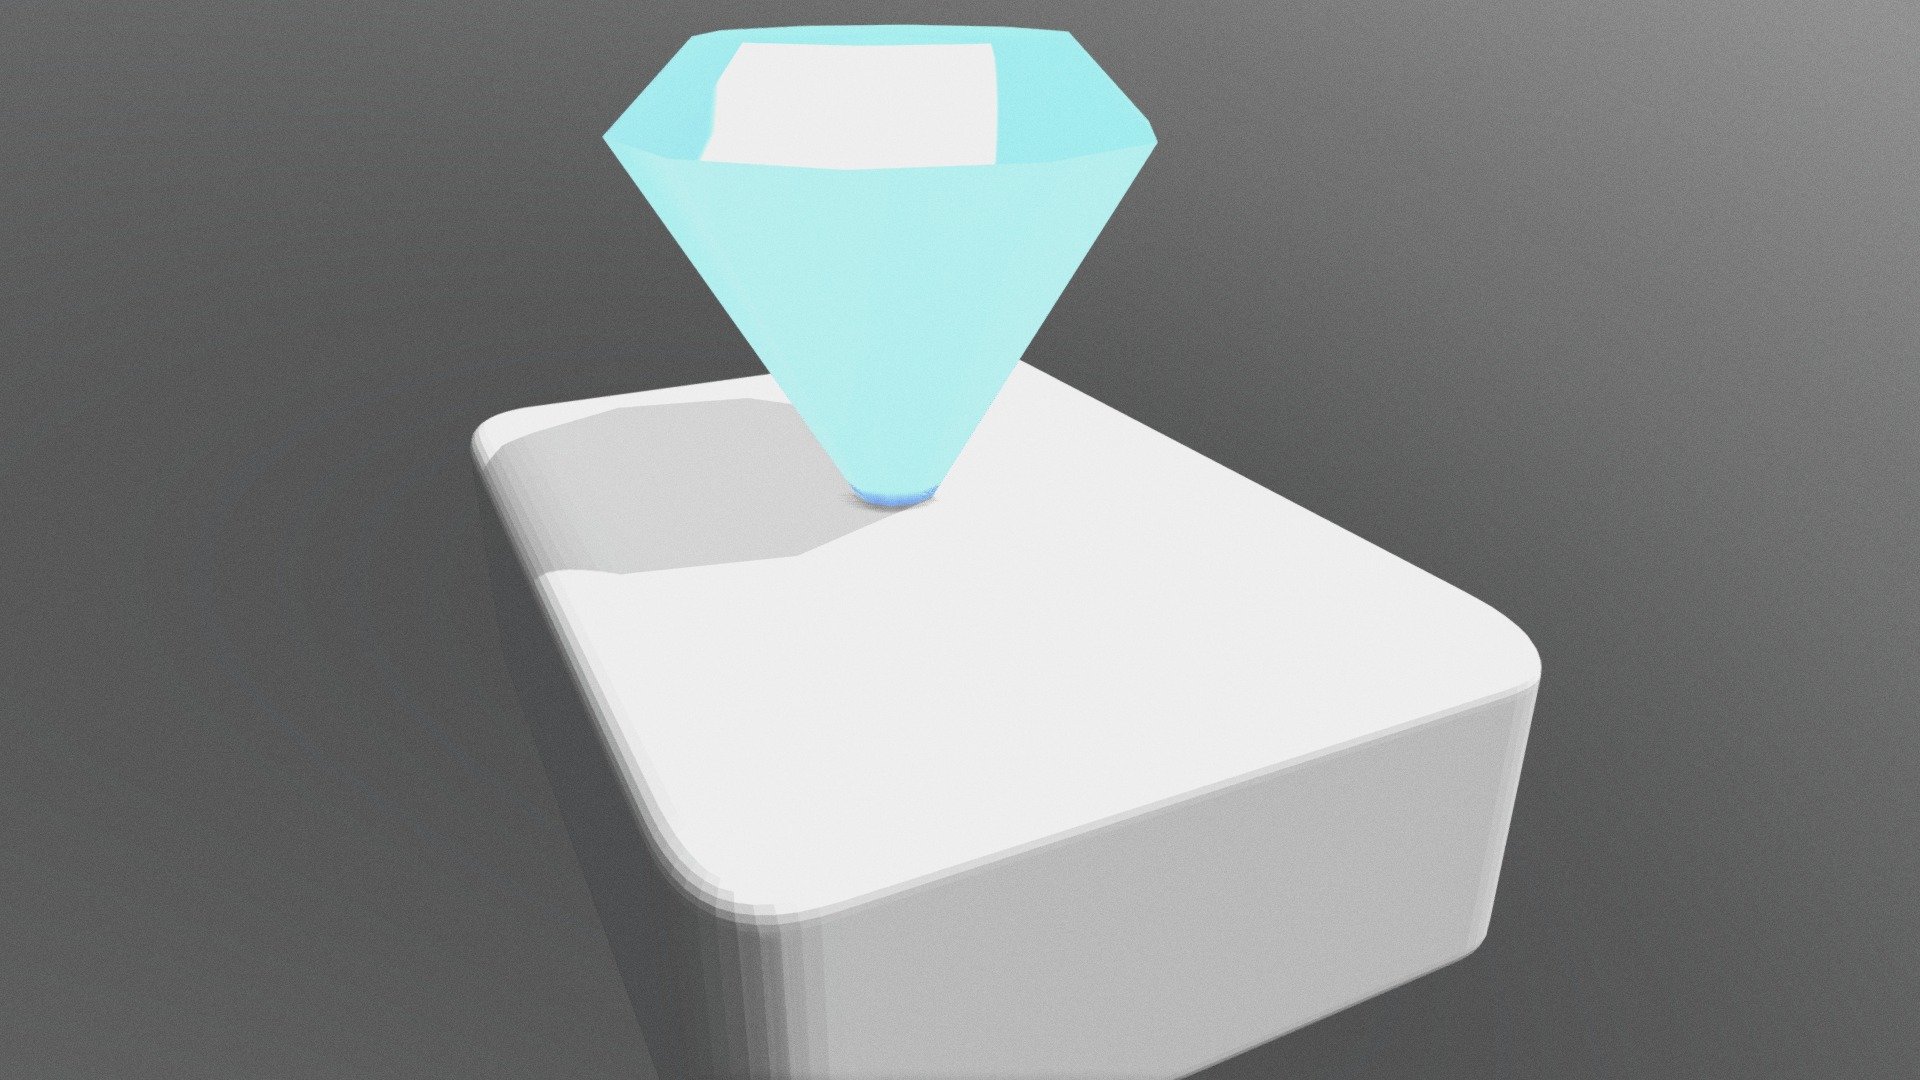 Beautiful blue 10-sided diamond